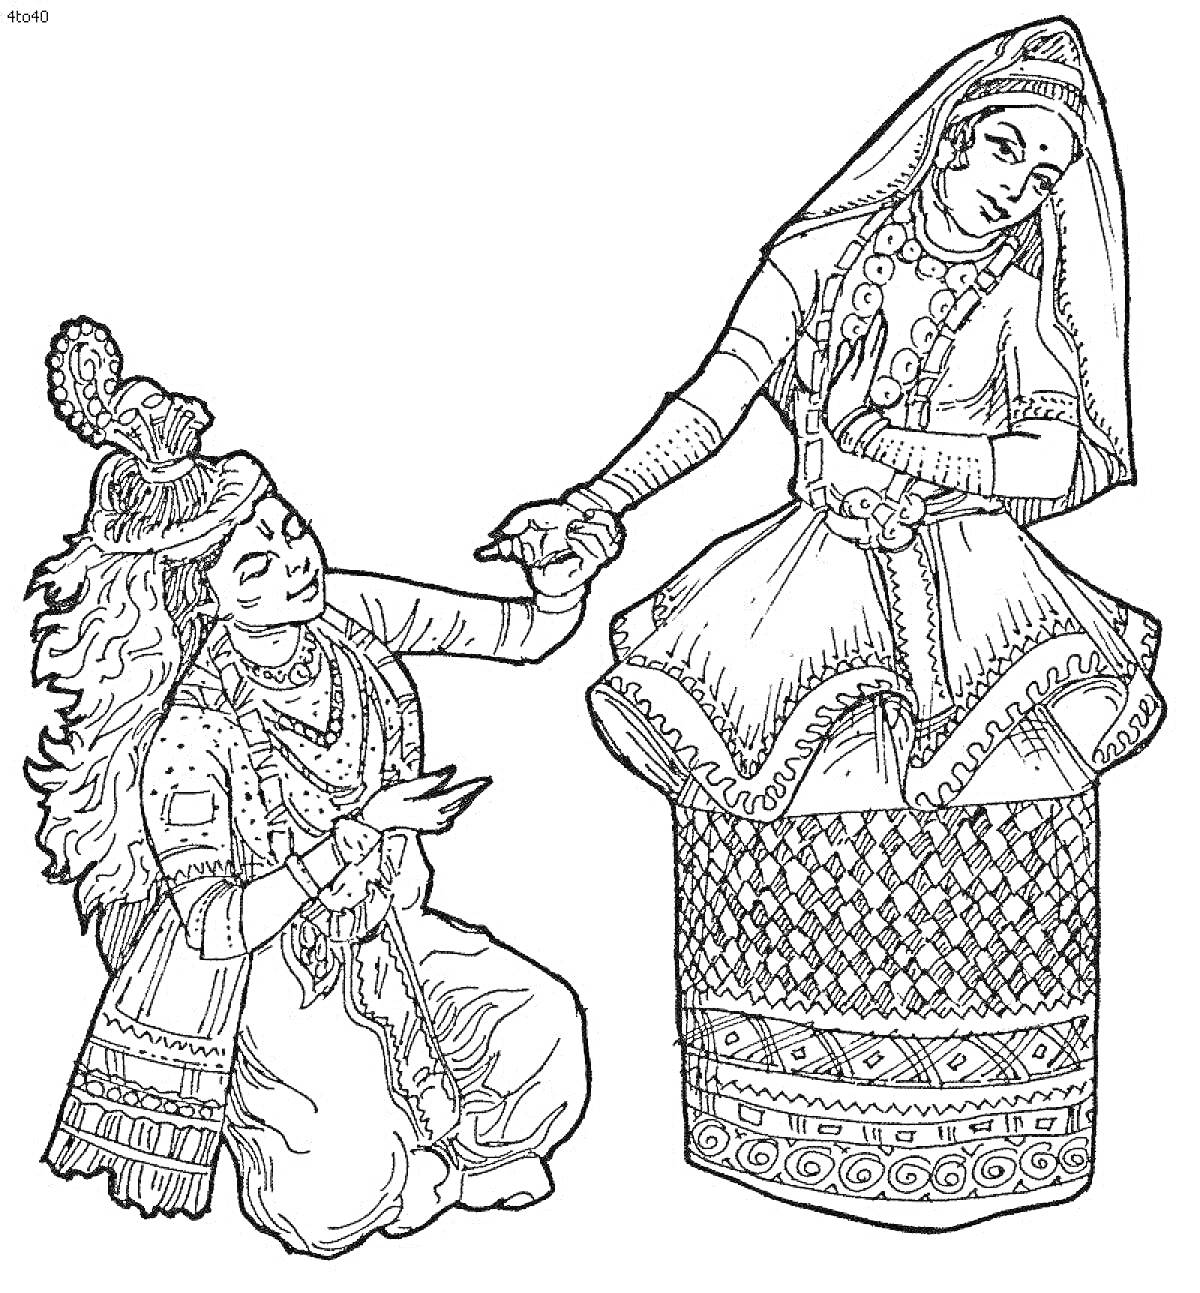 Раскраска Традиционная казахская пара в национальном костюме, мужчина и женщина в орнаментированном одеянии, женщина в длинном юбке и покрывале на голове, мужчина в головном уборе с перьями и пышном наряде с длинными рукавами. Женщина держит мужчину за руку.